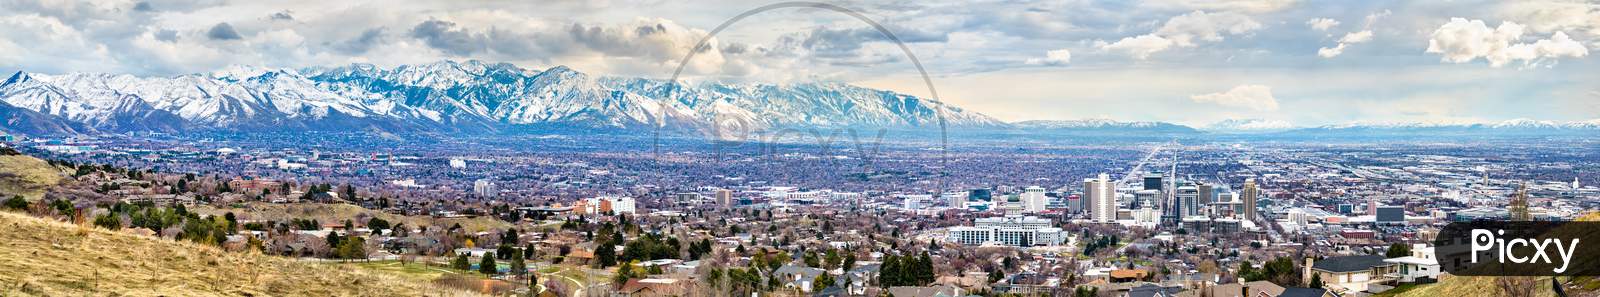 Panorama Of Salt Lake City In Utah